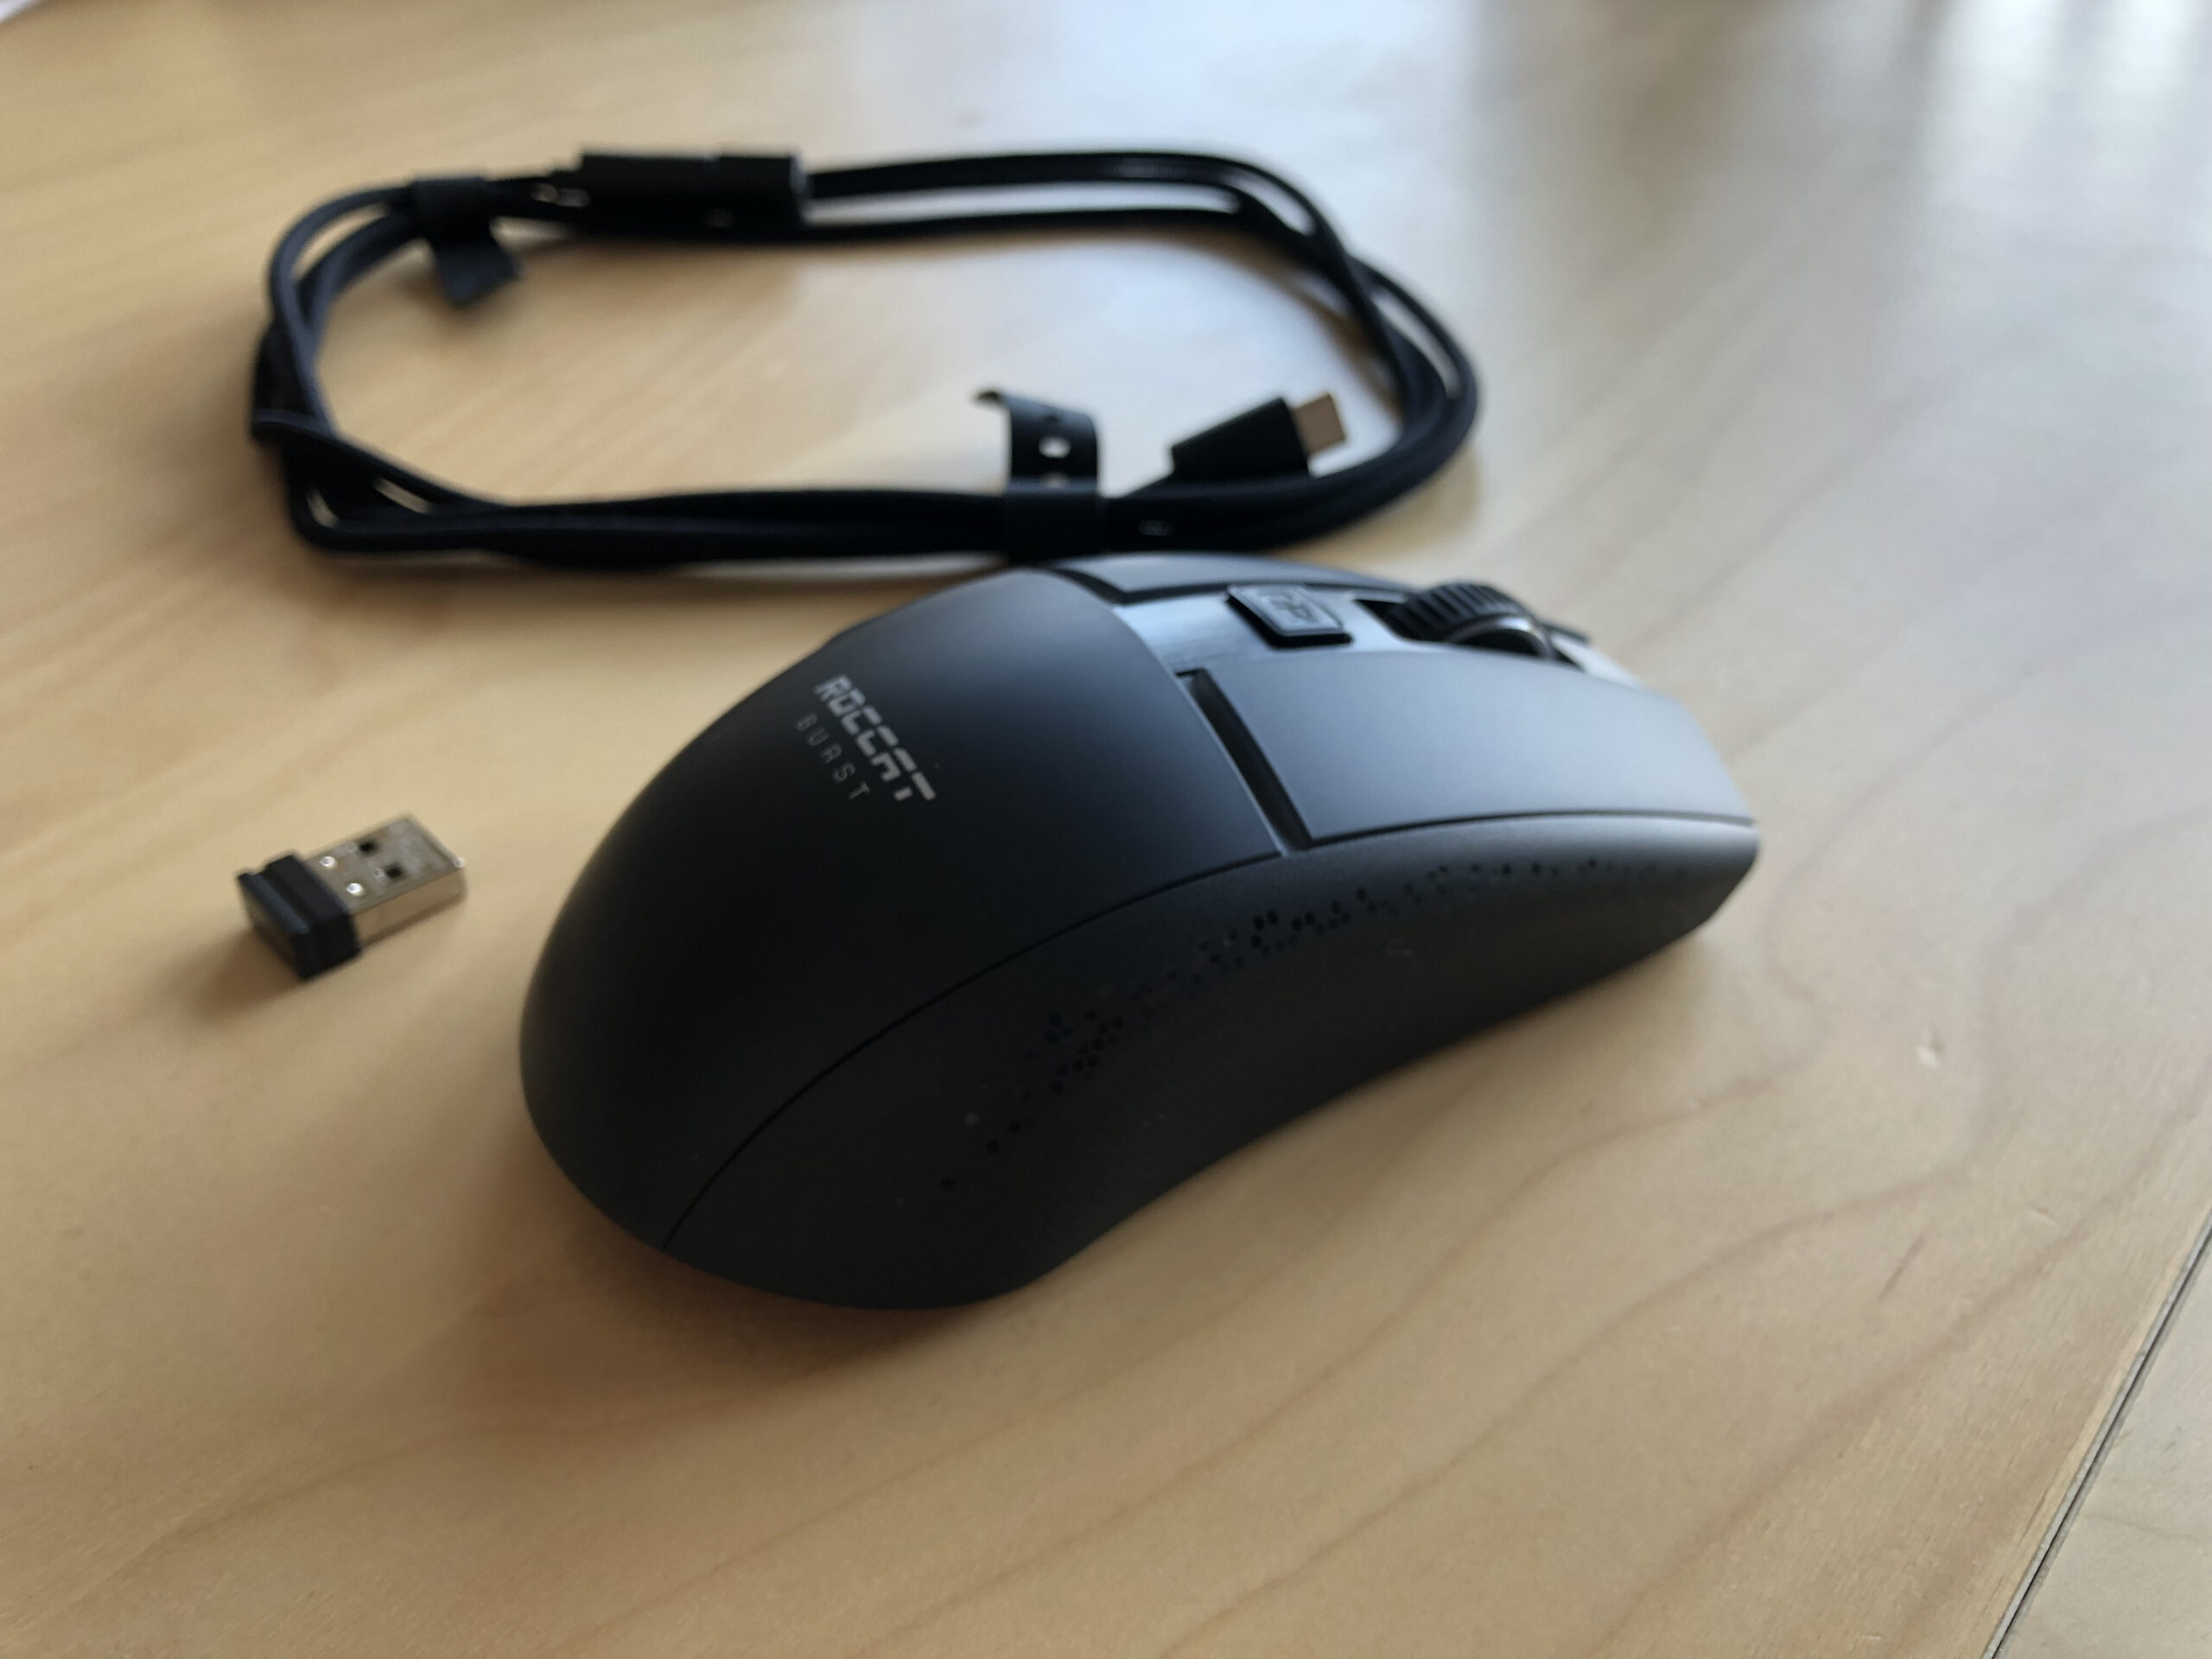 Roccat Burst Pro : Test d'une souris gaming optique ultralégère